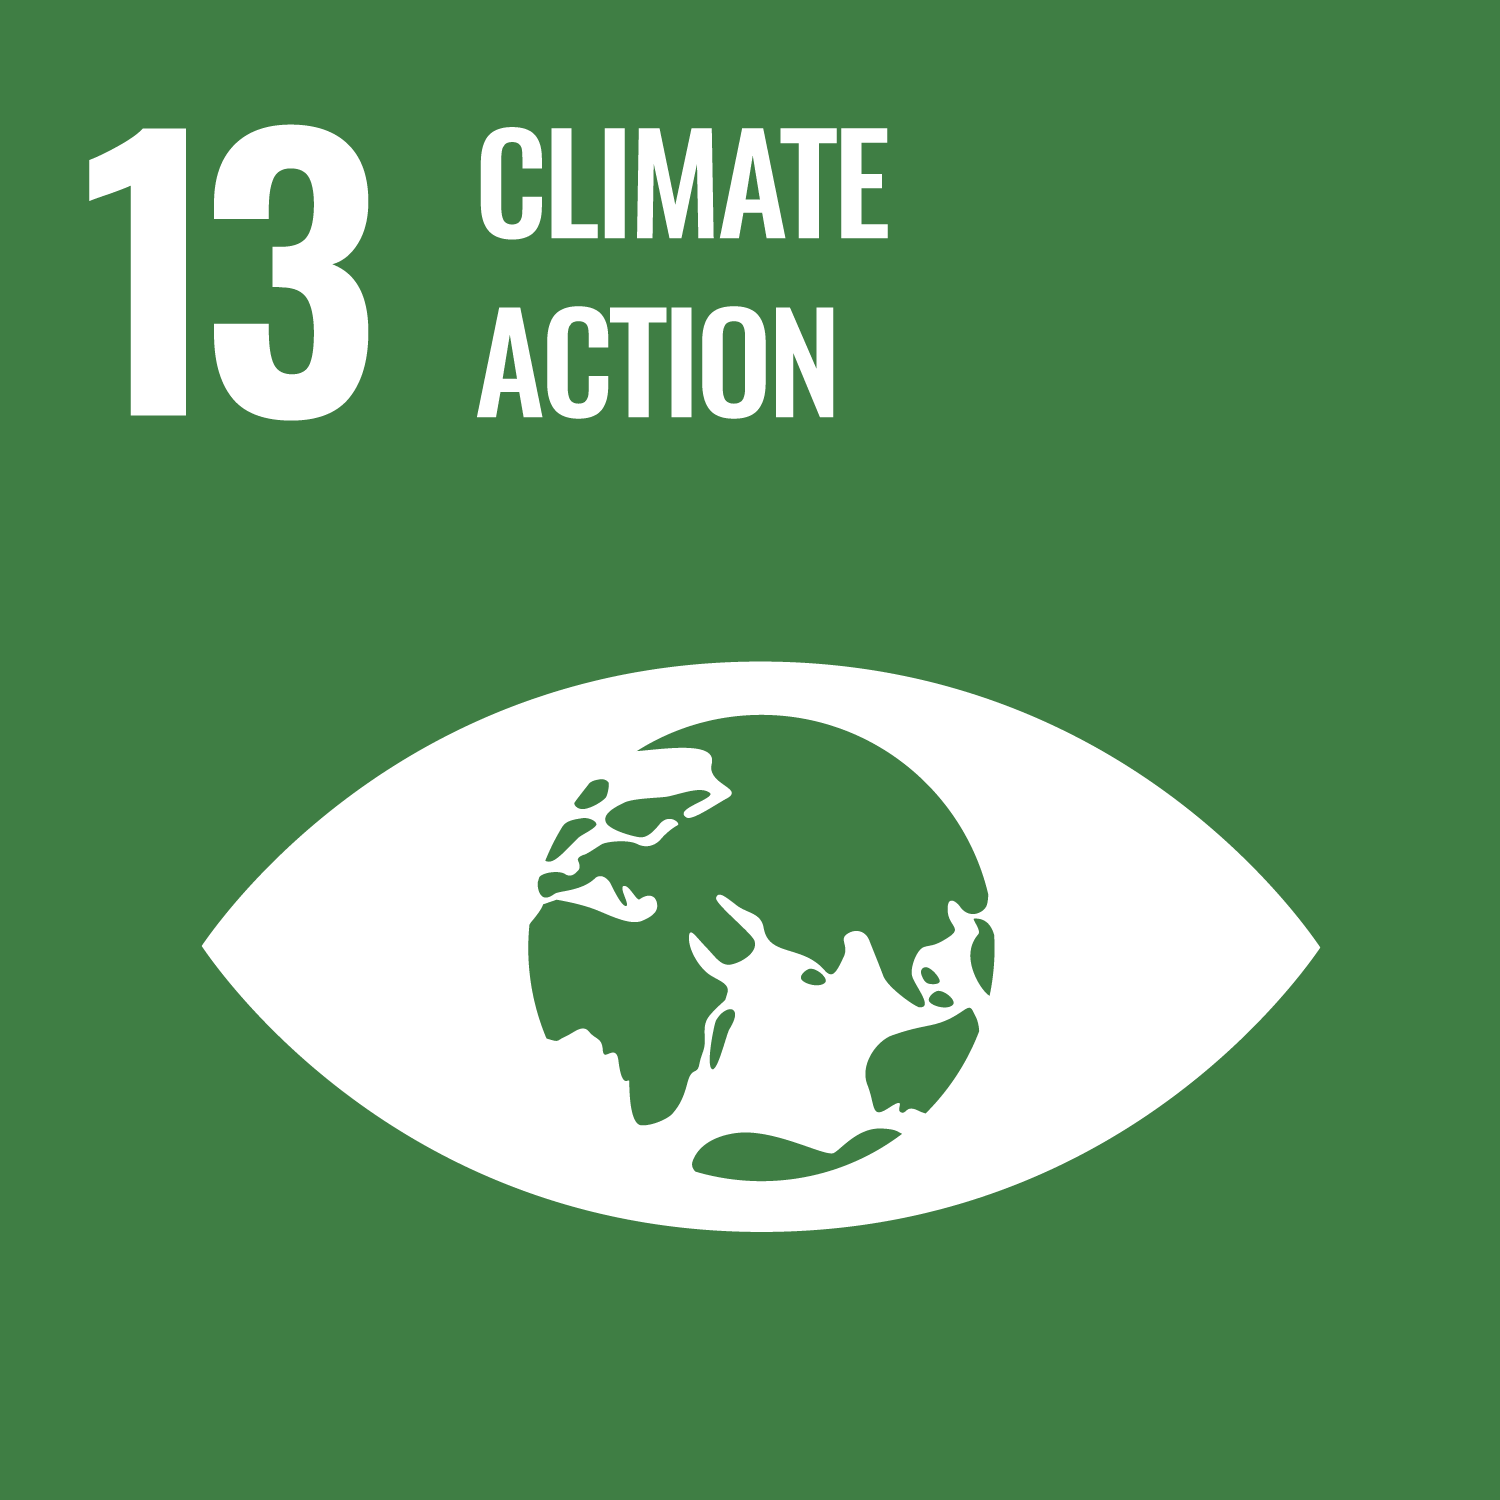 UN SDG 13